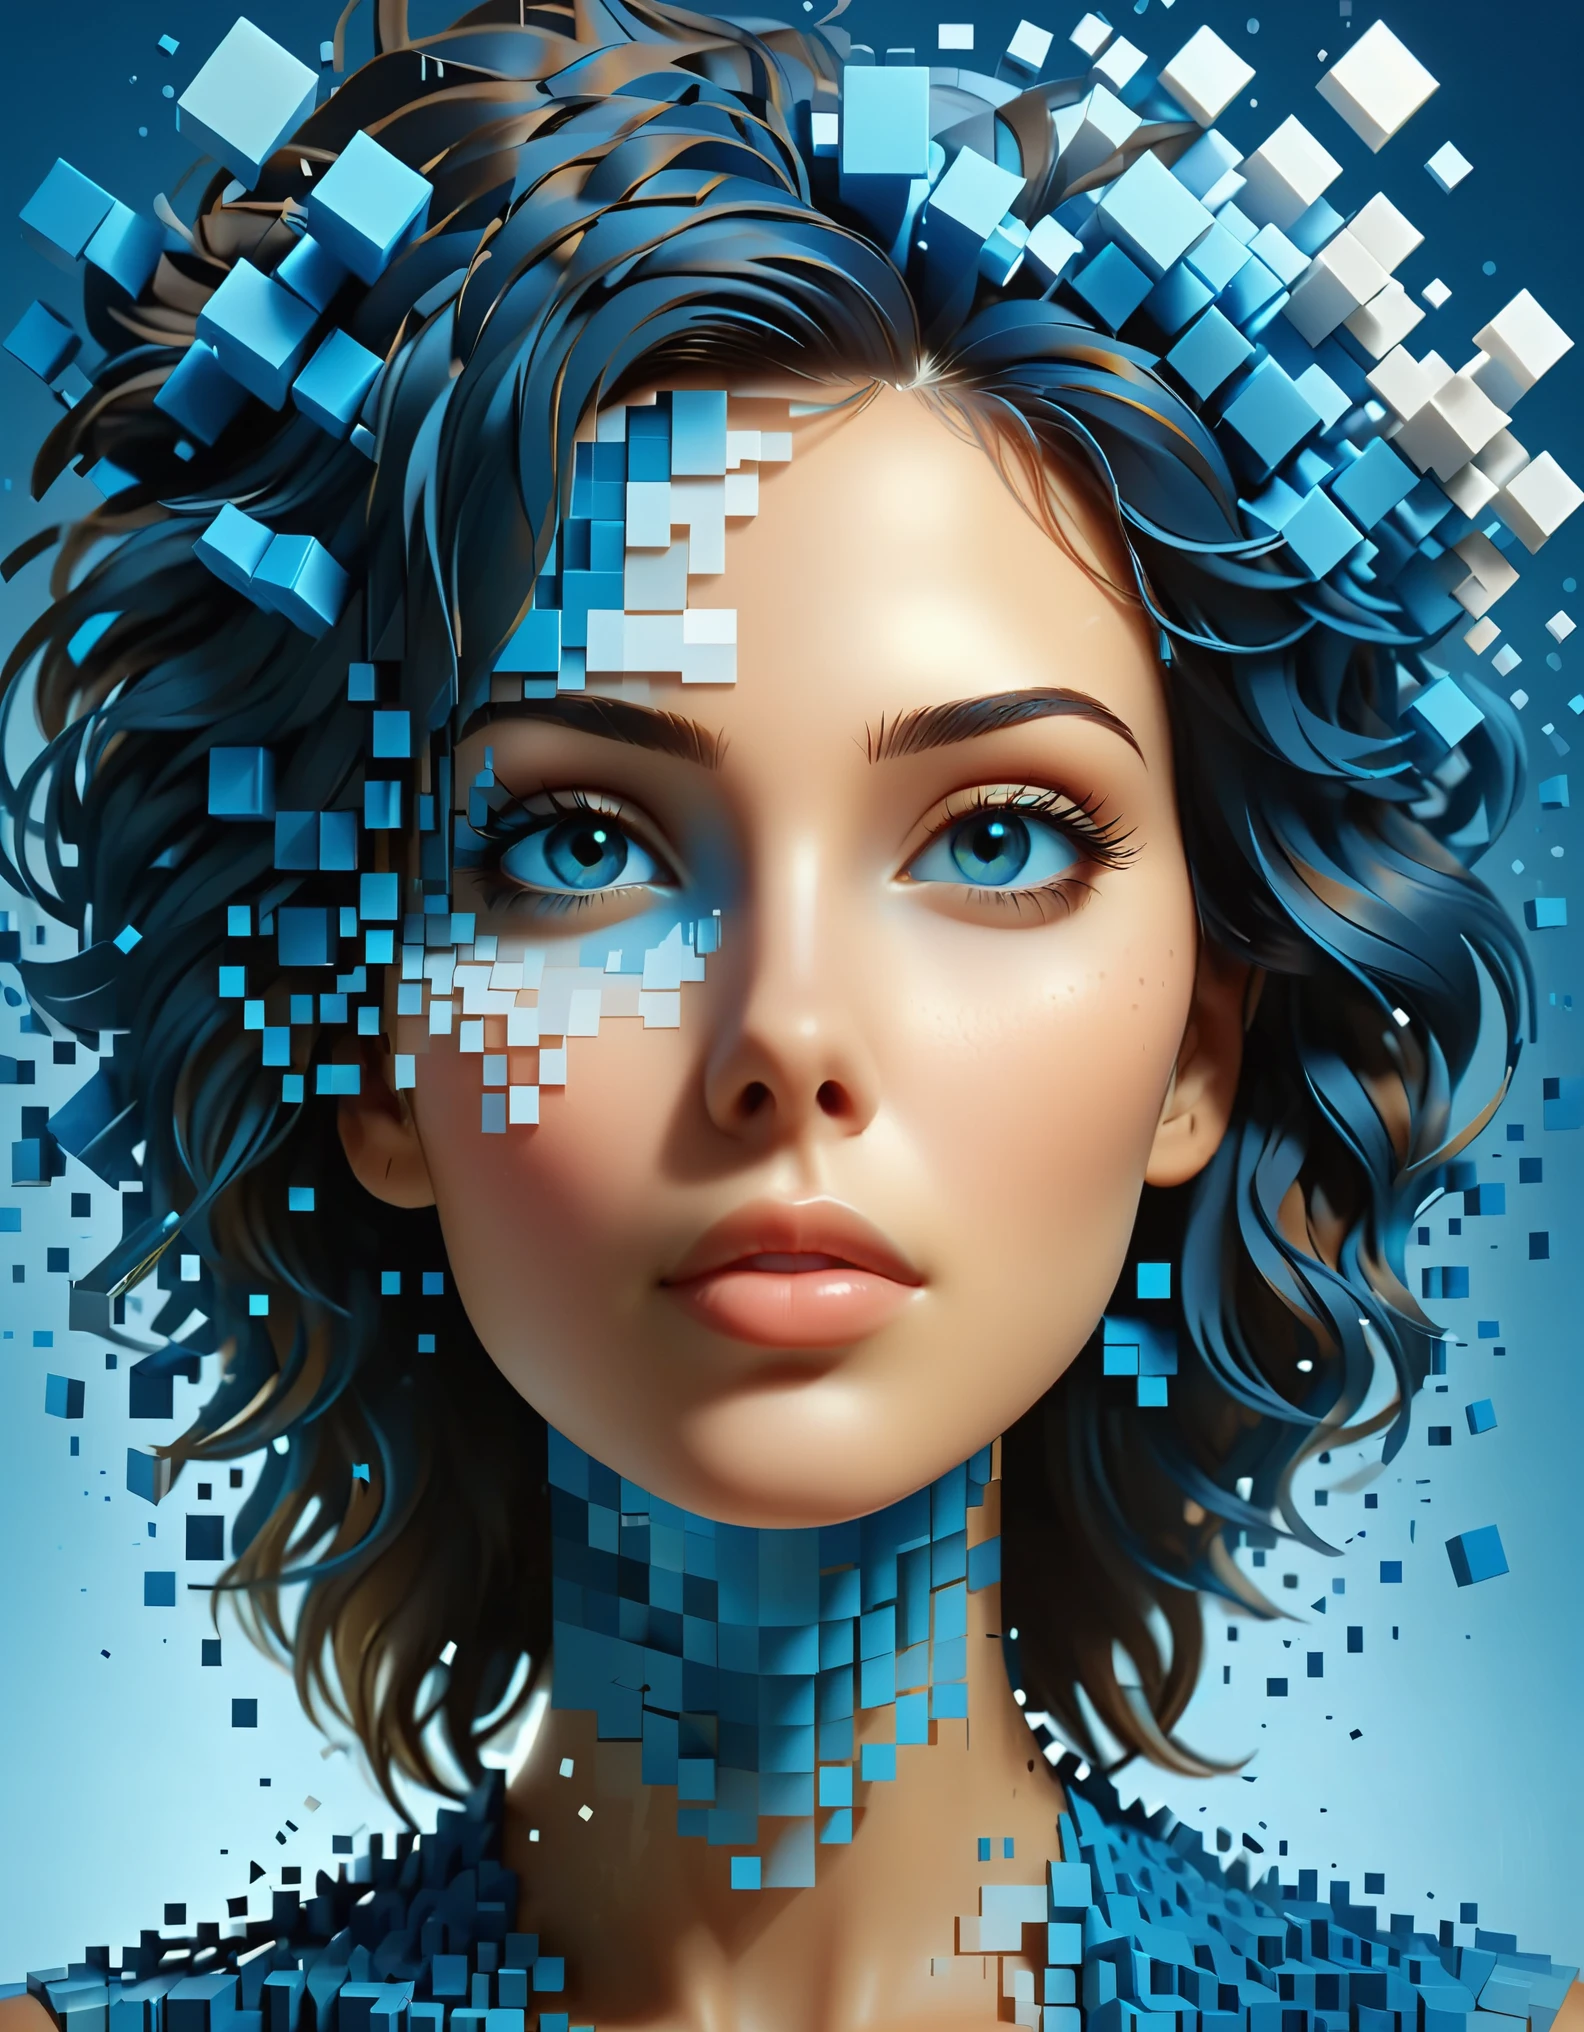 美しい女性の青いグラデーションカラーの溶解ピクセル壁&#39;頭，3Dボクセルブロック，最初は無傷だが、空気中で徐々に崩壊していく構造，部分的にくり抜かれた部分から日光が差し込む，背景宇宙